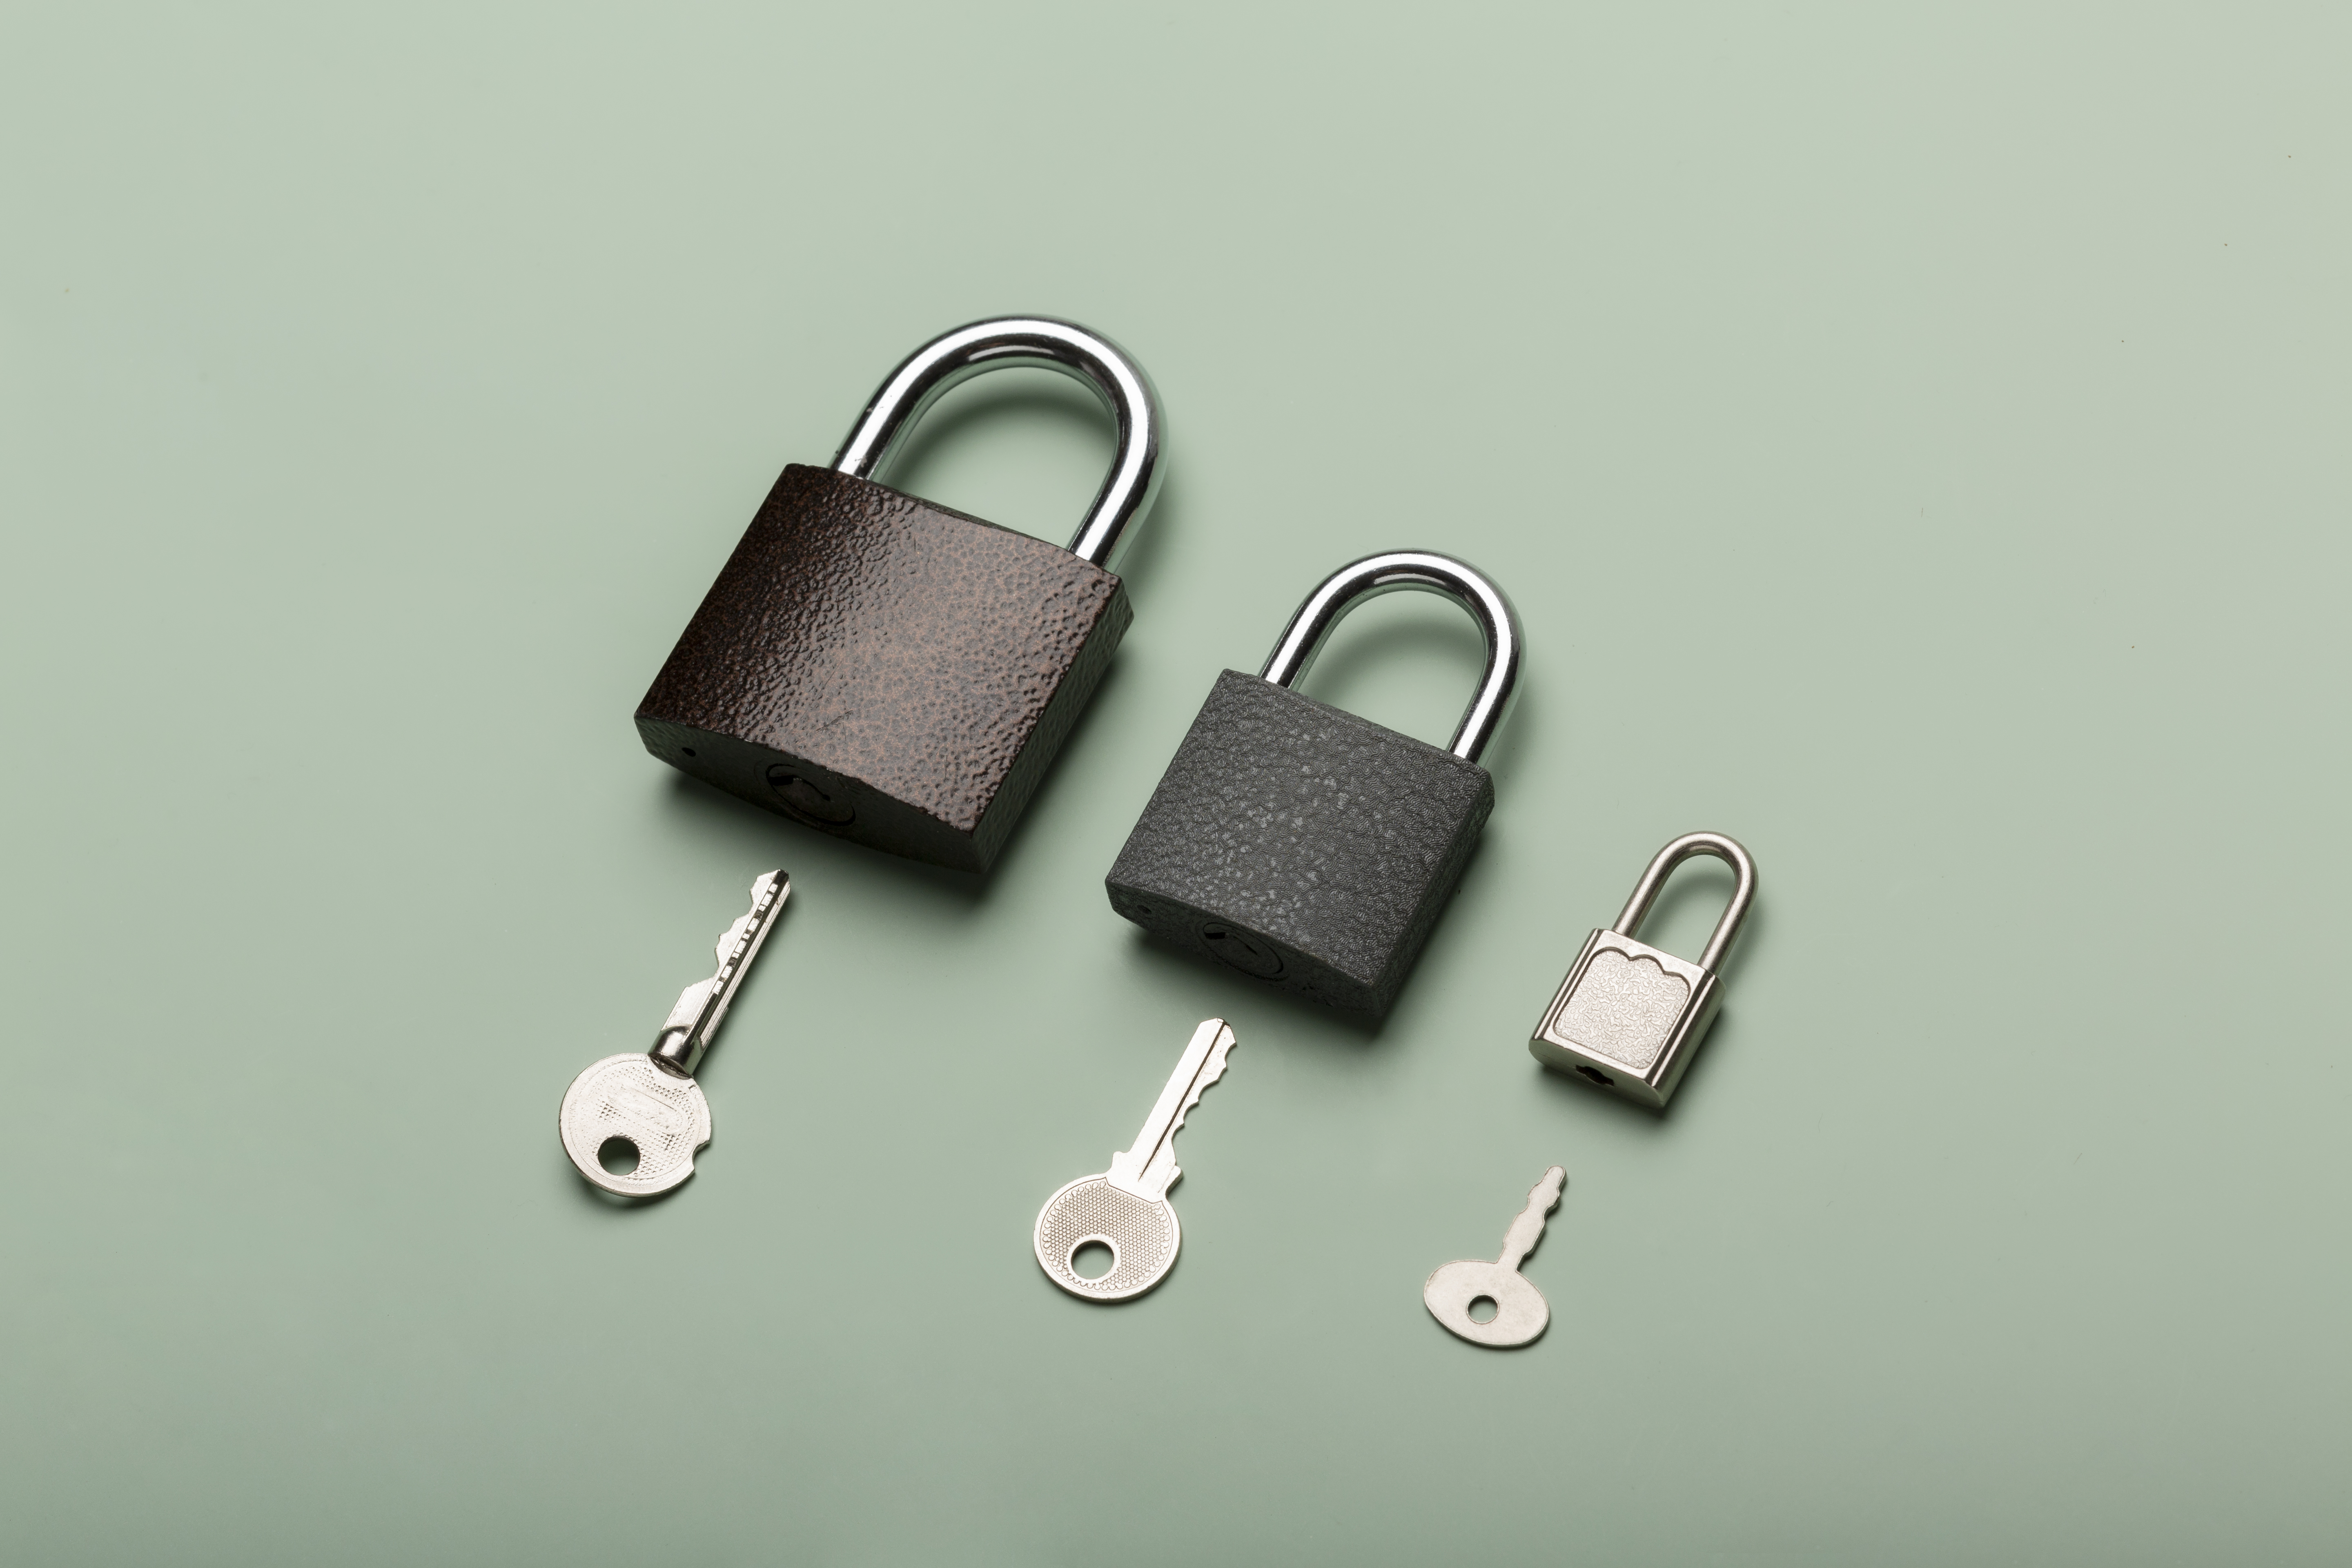 https://example.com/images/residential-commercial-locks.jpg